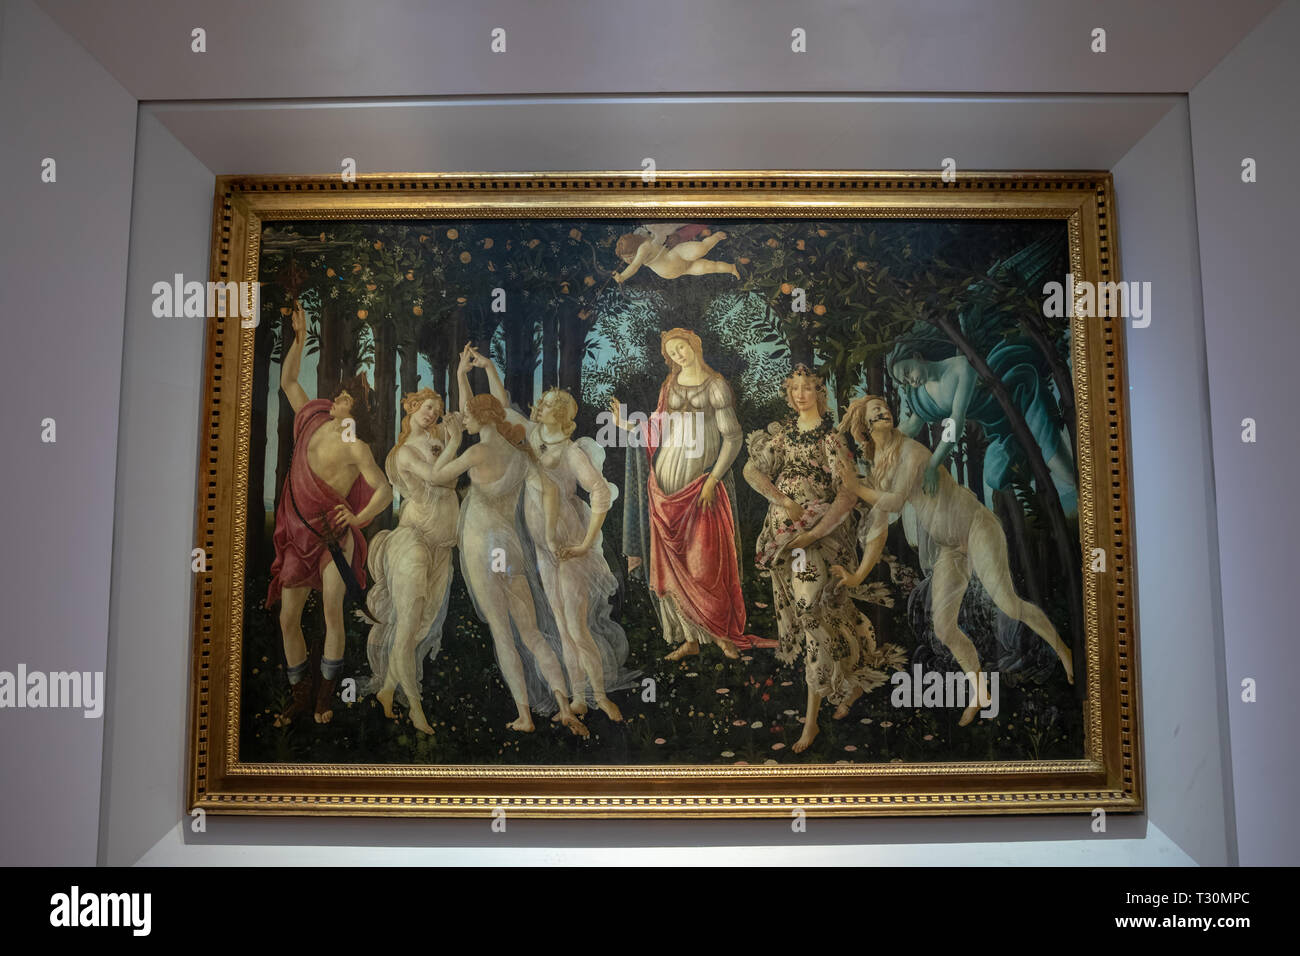 Florence, Italie - 26 juin 2018 : Photo de Primavera (printemps) est la peinture à la détrempe peinture par le peintre italien Sandro Botticelli dans hall o Banque D'Images